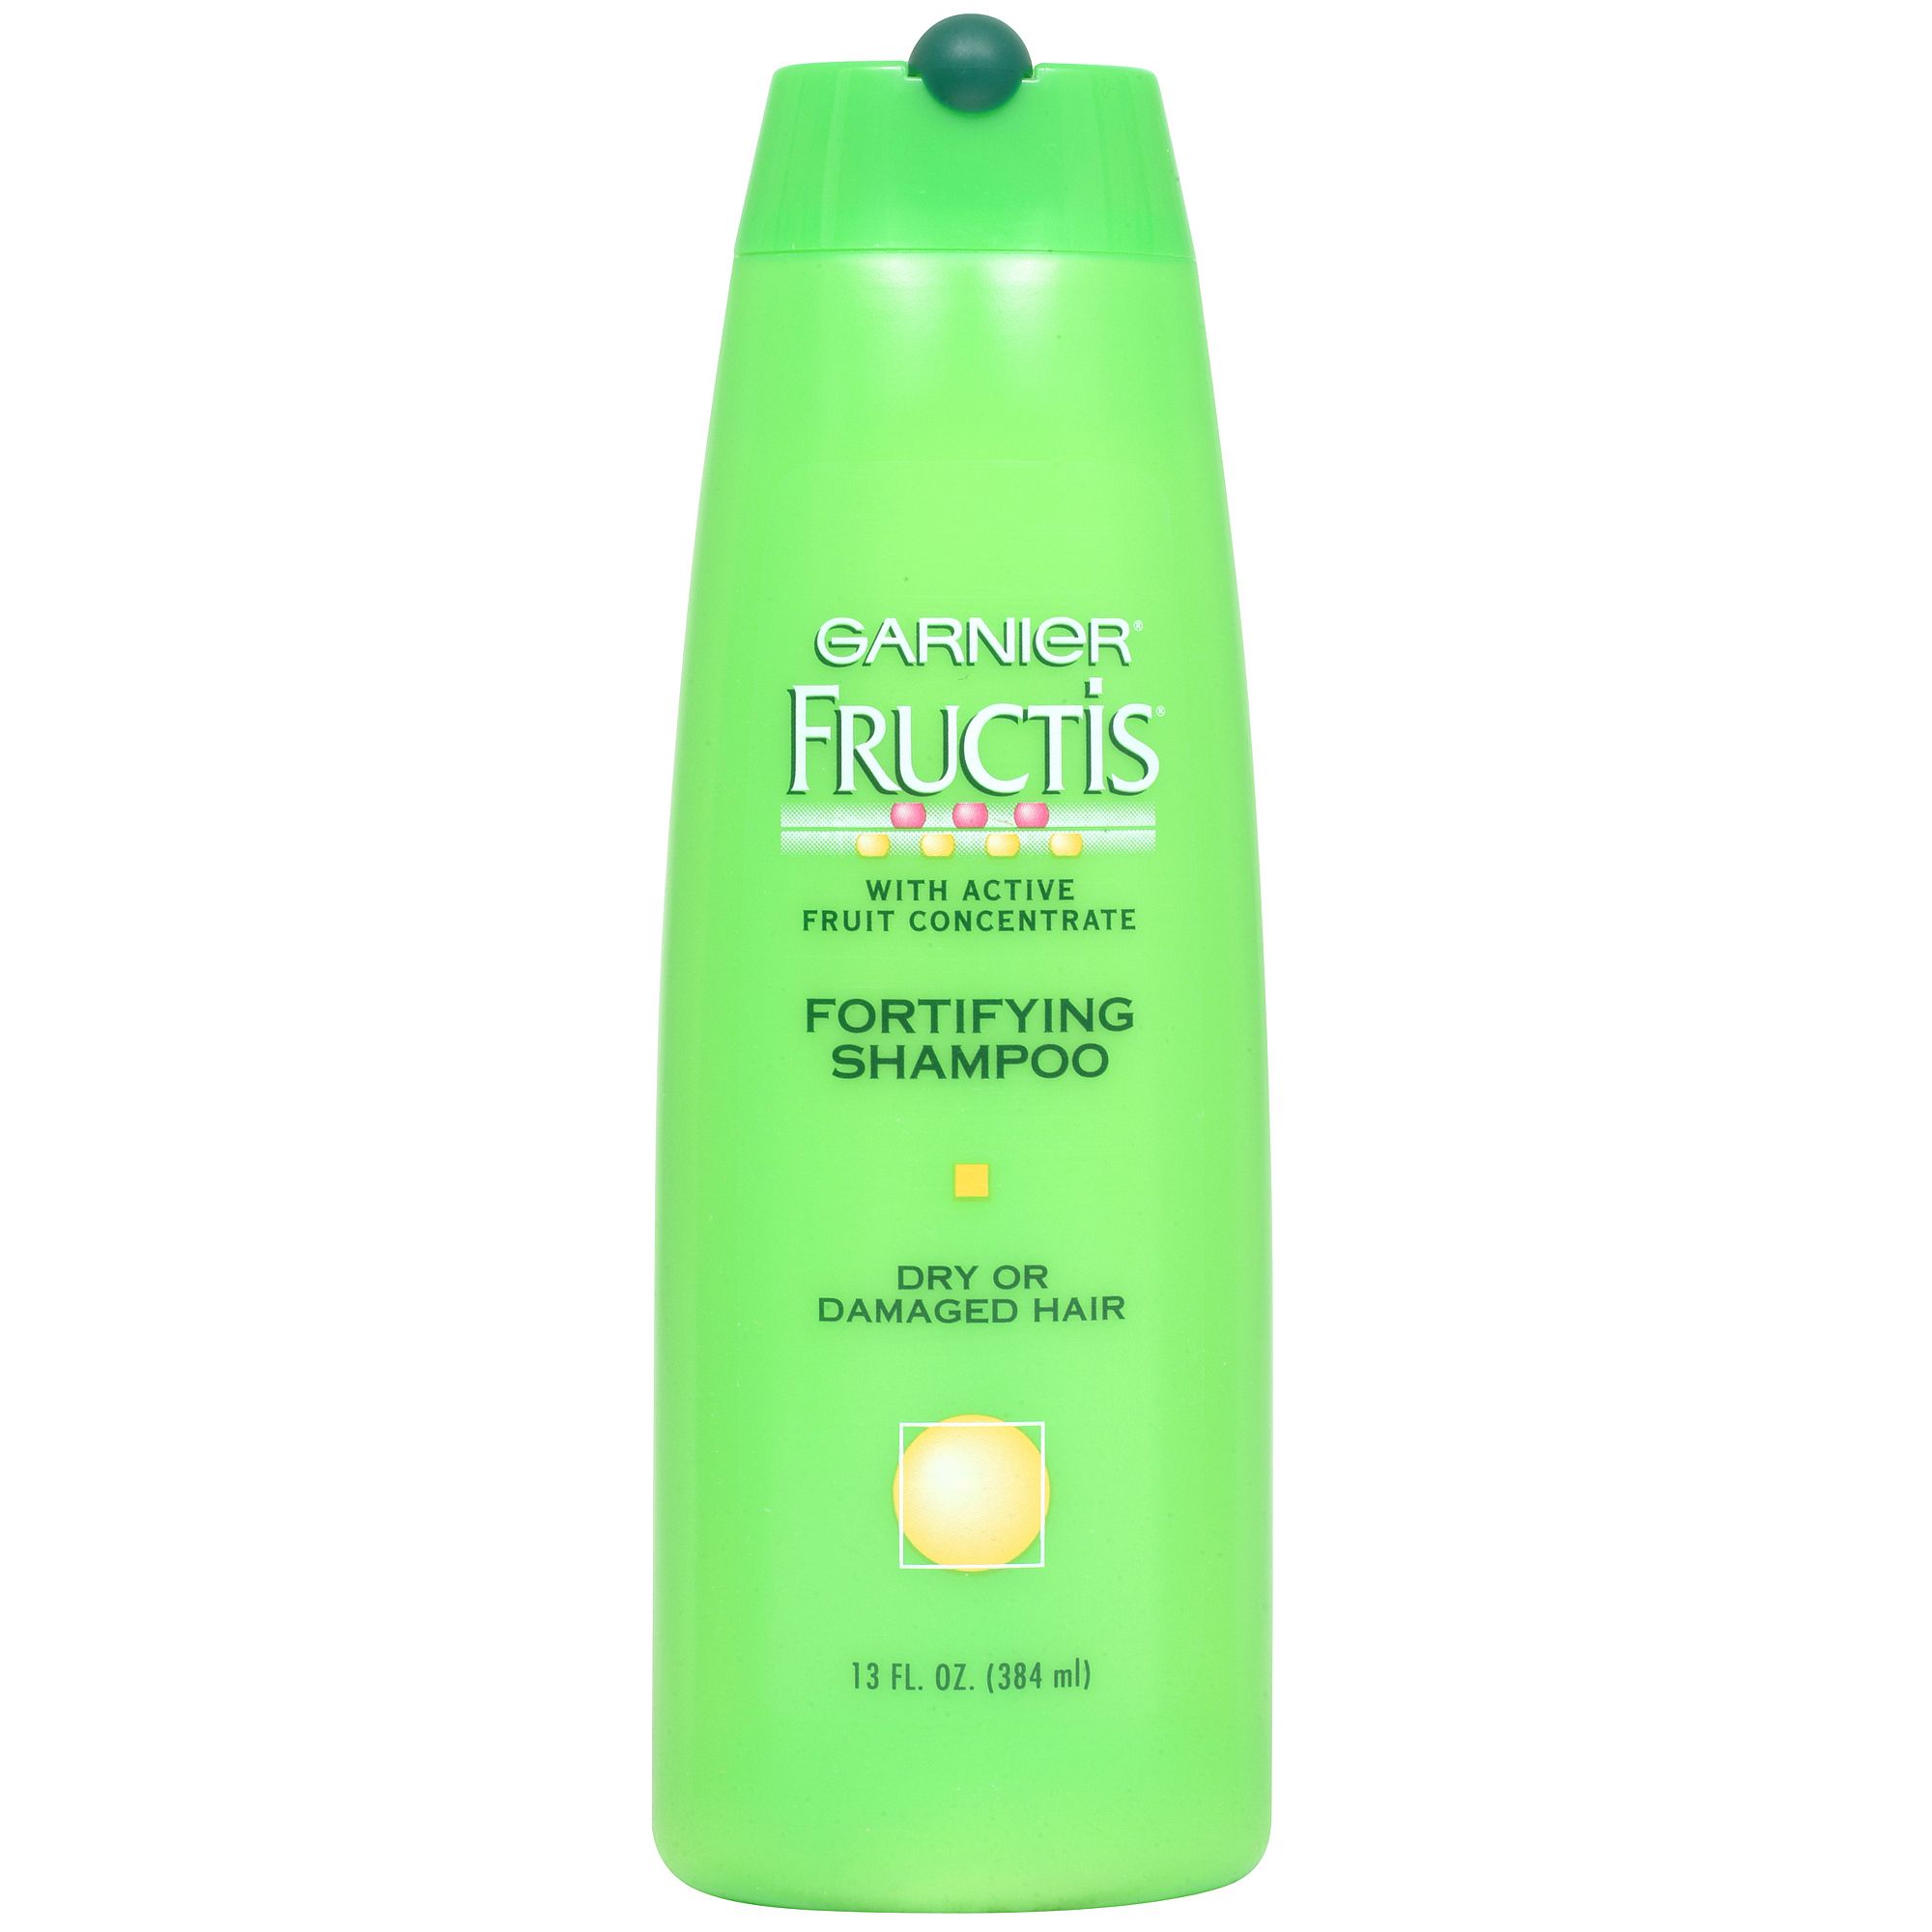 Garnier Fructis Fortifying Shampoo, Dry or Damaged Hair, 13 fl oz (384 ml)